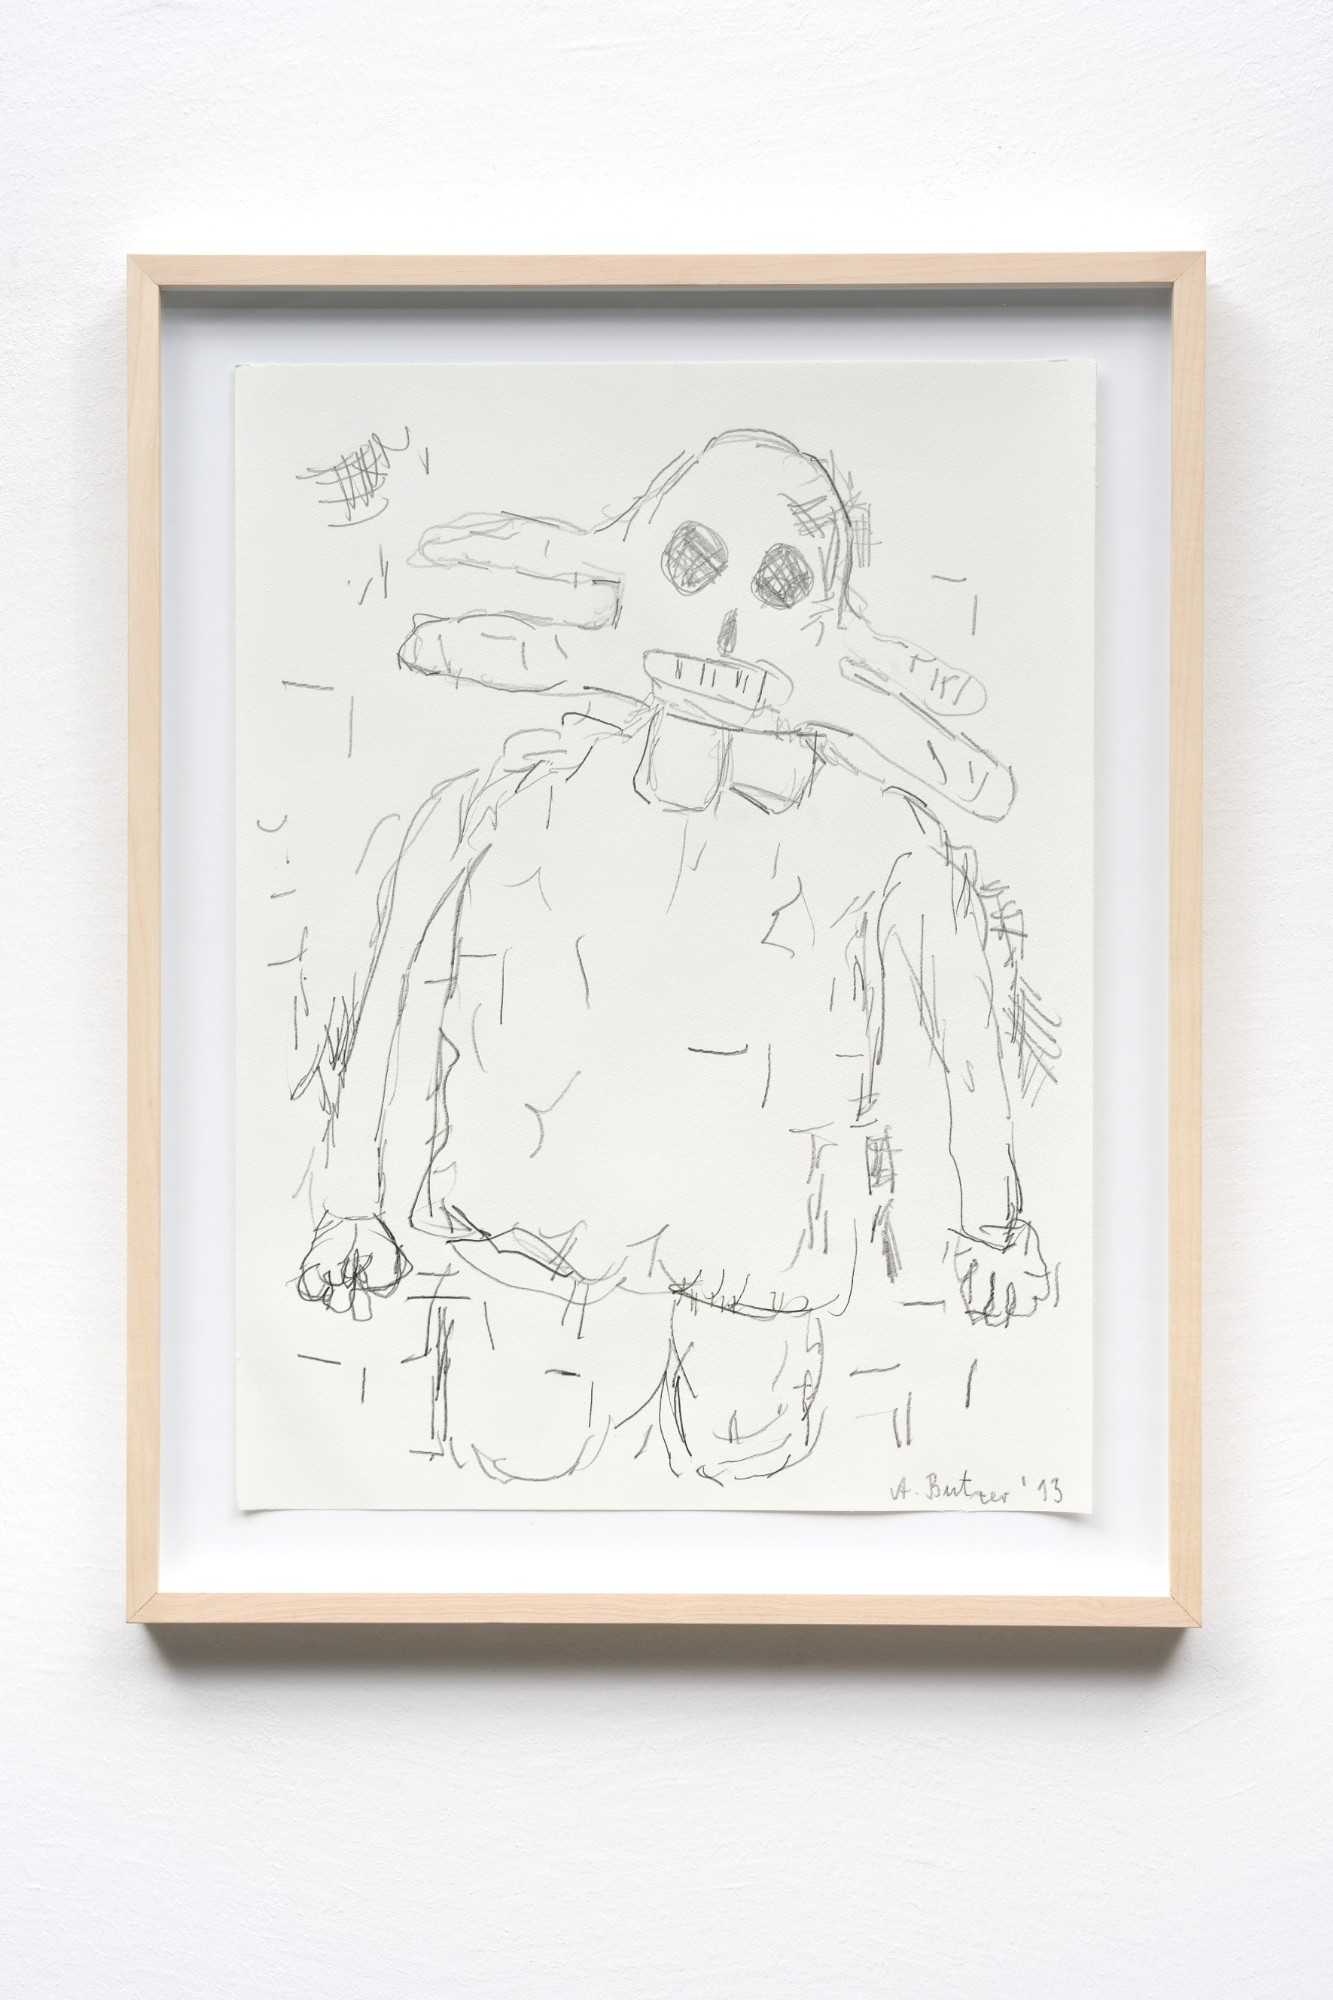 André Butzer, Untitled, 2013, pencil on paper, 48 x 36 cm